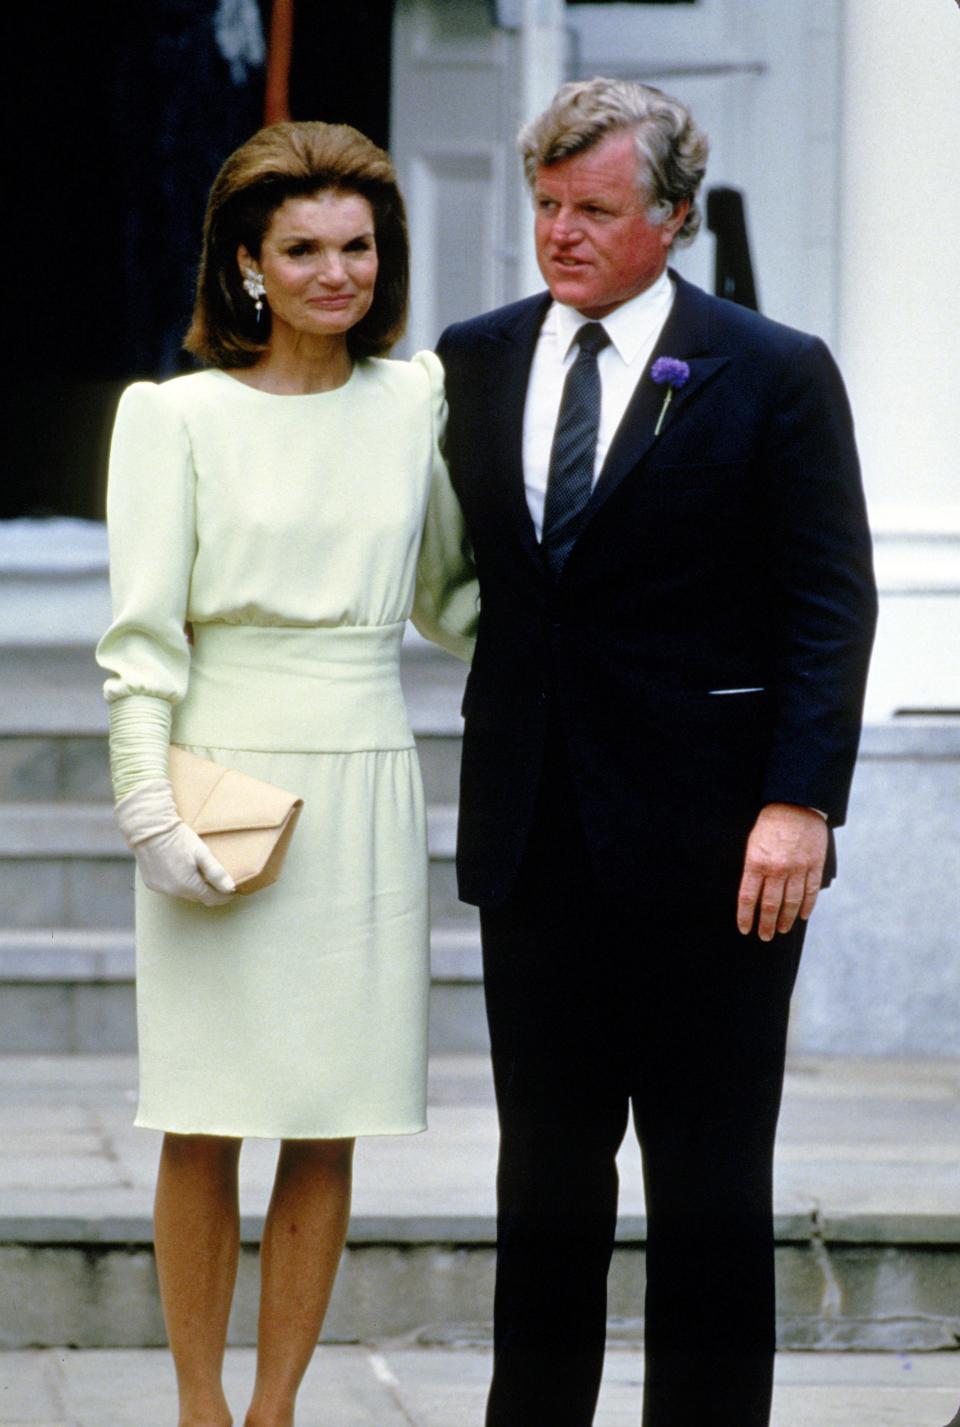 Jacqueline Jackie Kennedy in 1986 wearing a mint green dress